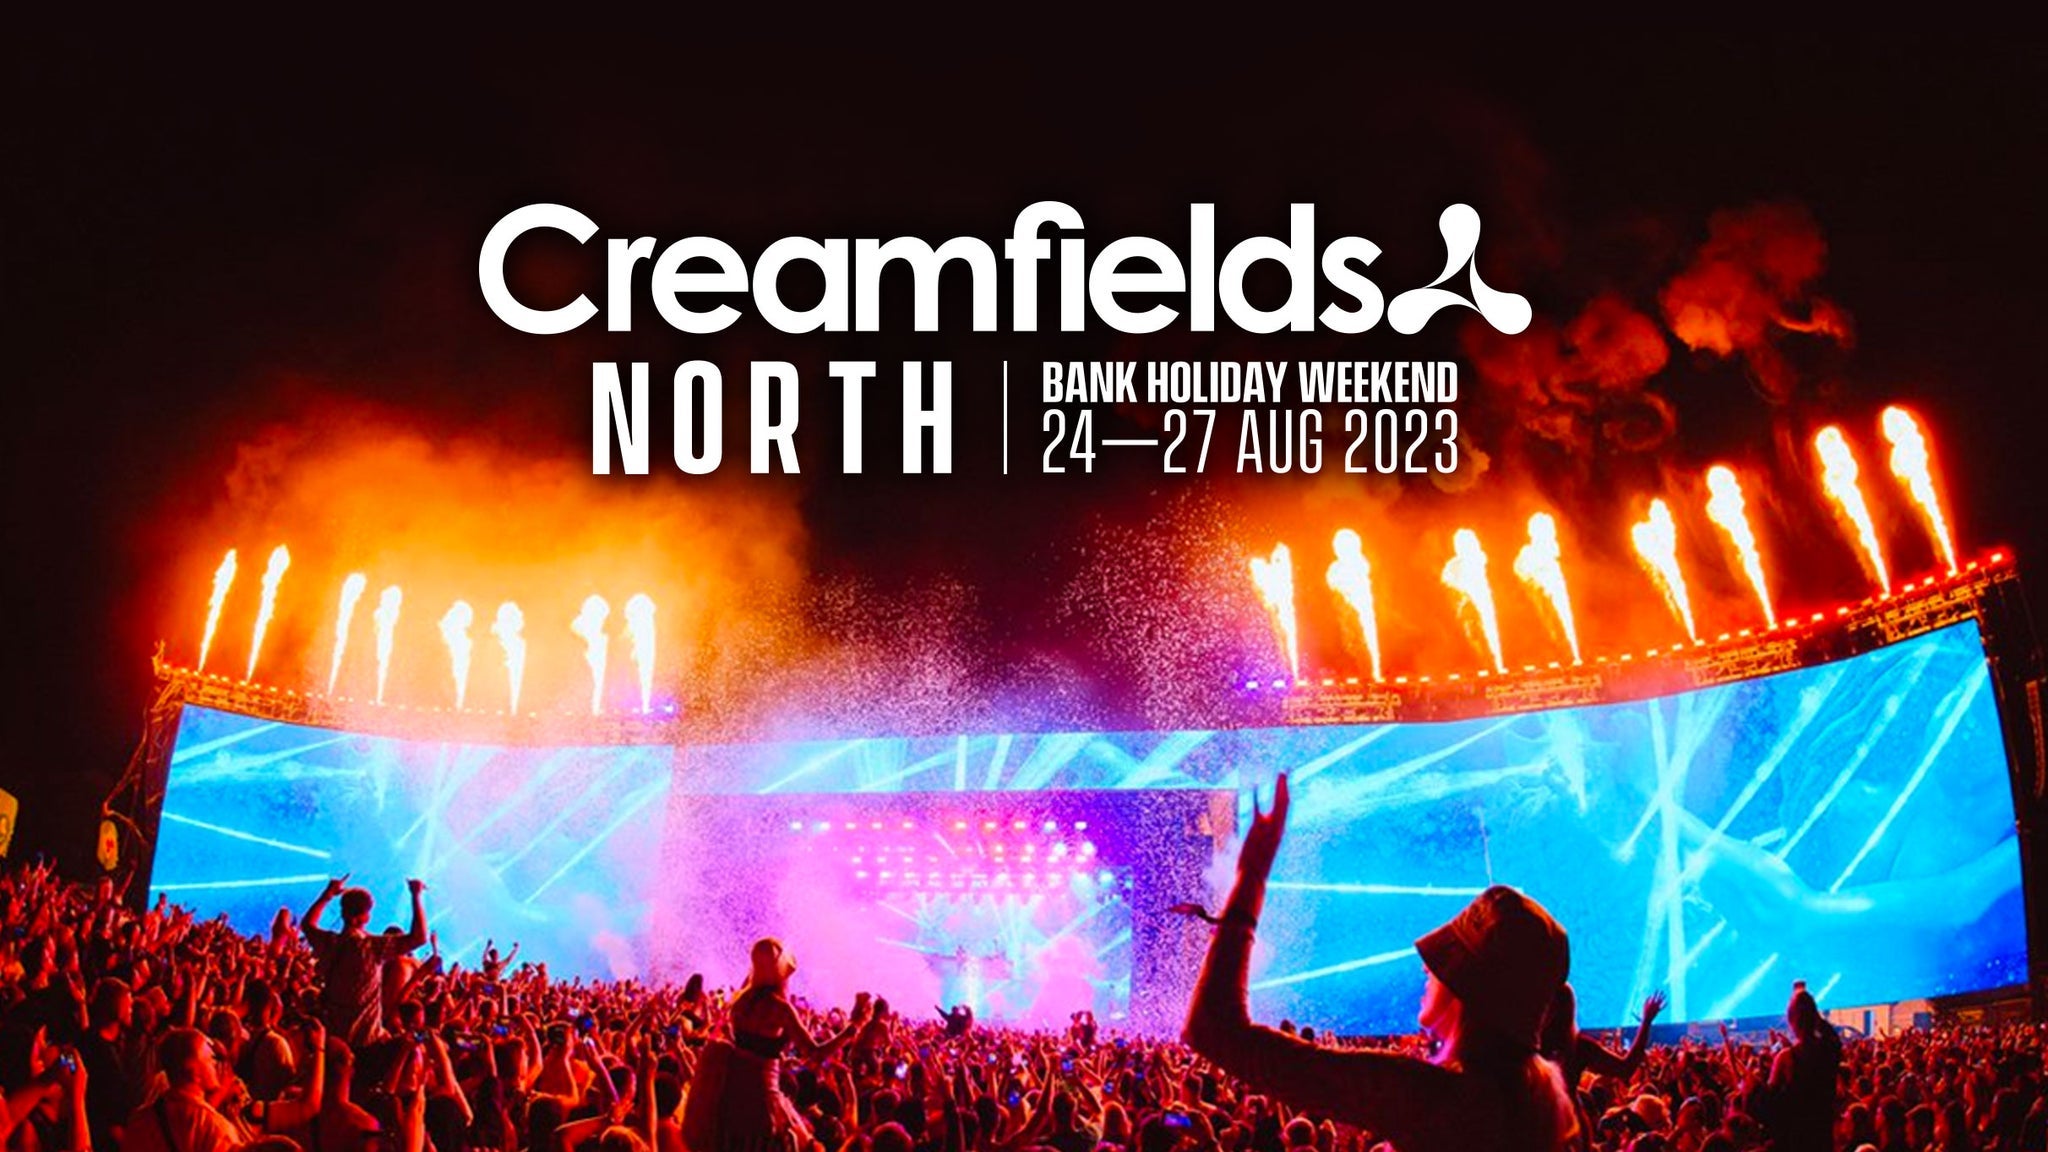 Creamfields North 2023 – Standard Friday Day Ticket